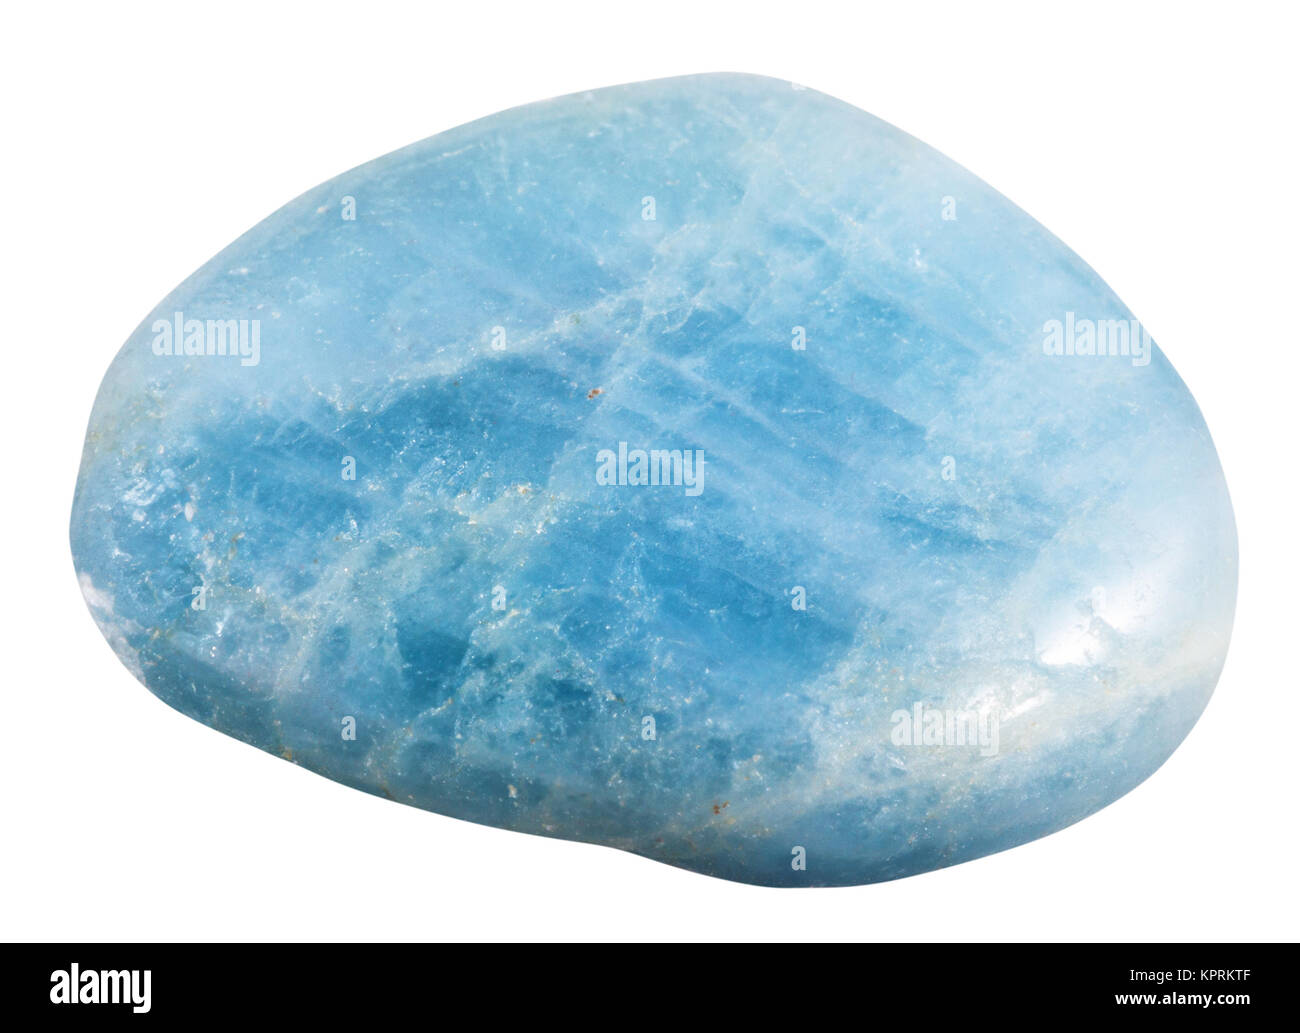 polished aquamarine (blue Beryl) gemstone isolated Stock Photo